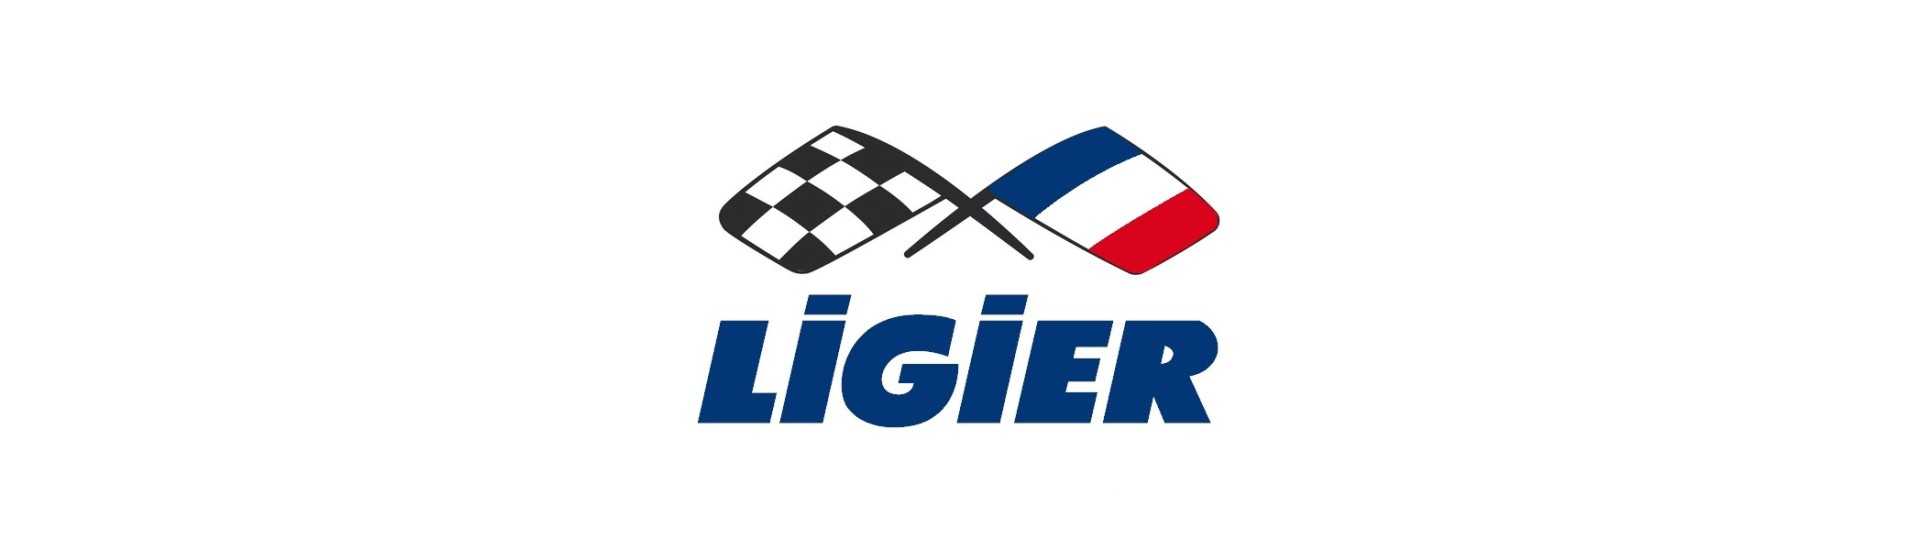 Tanque al mejor precio para coche sin permiso Ligier